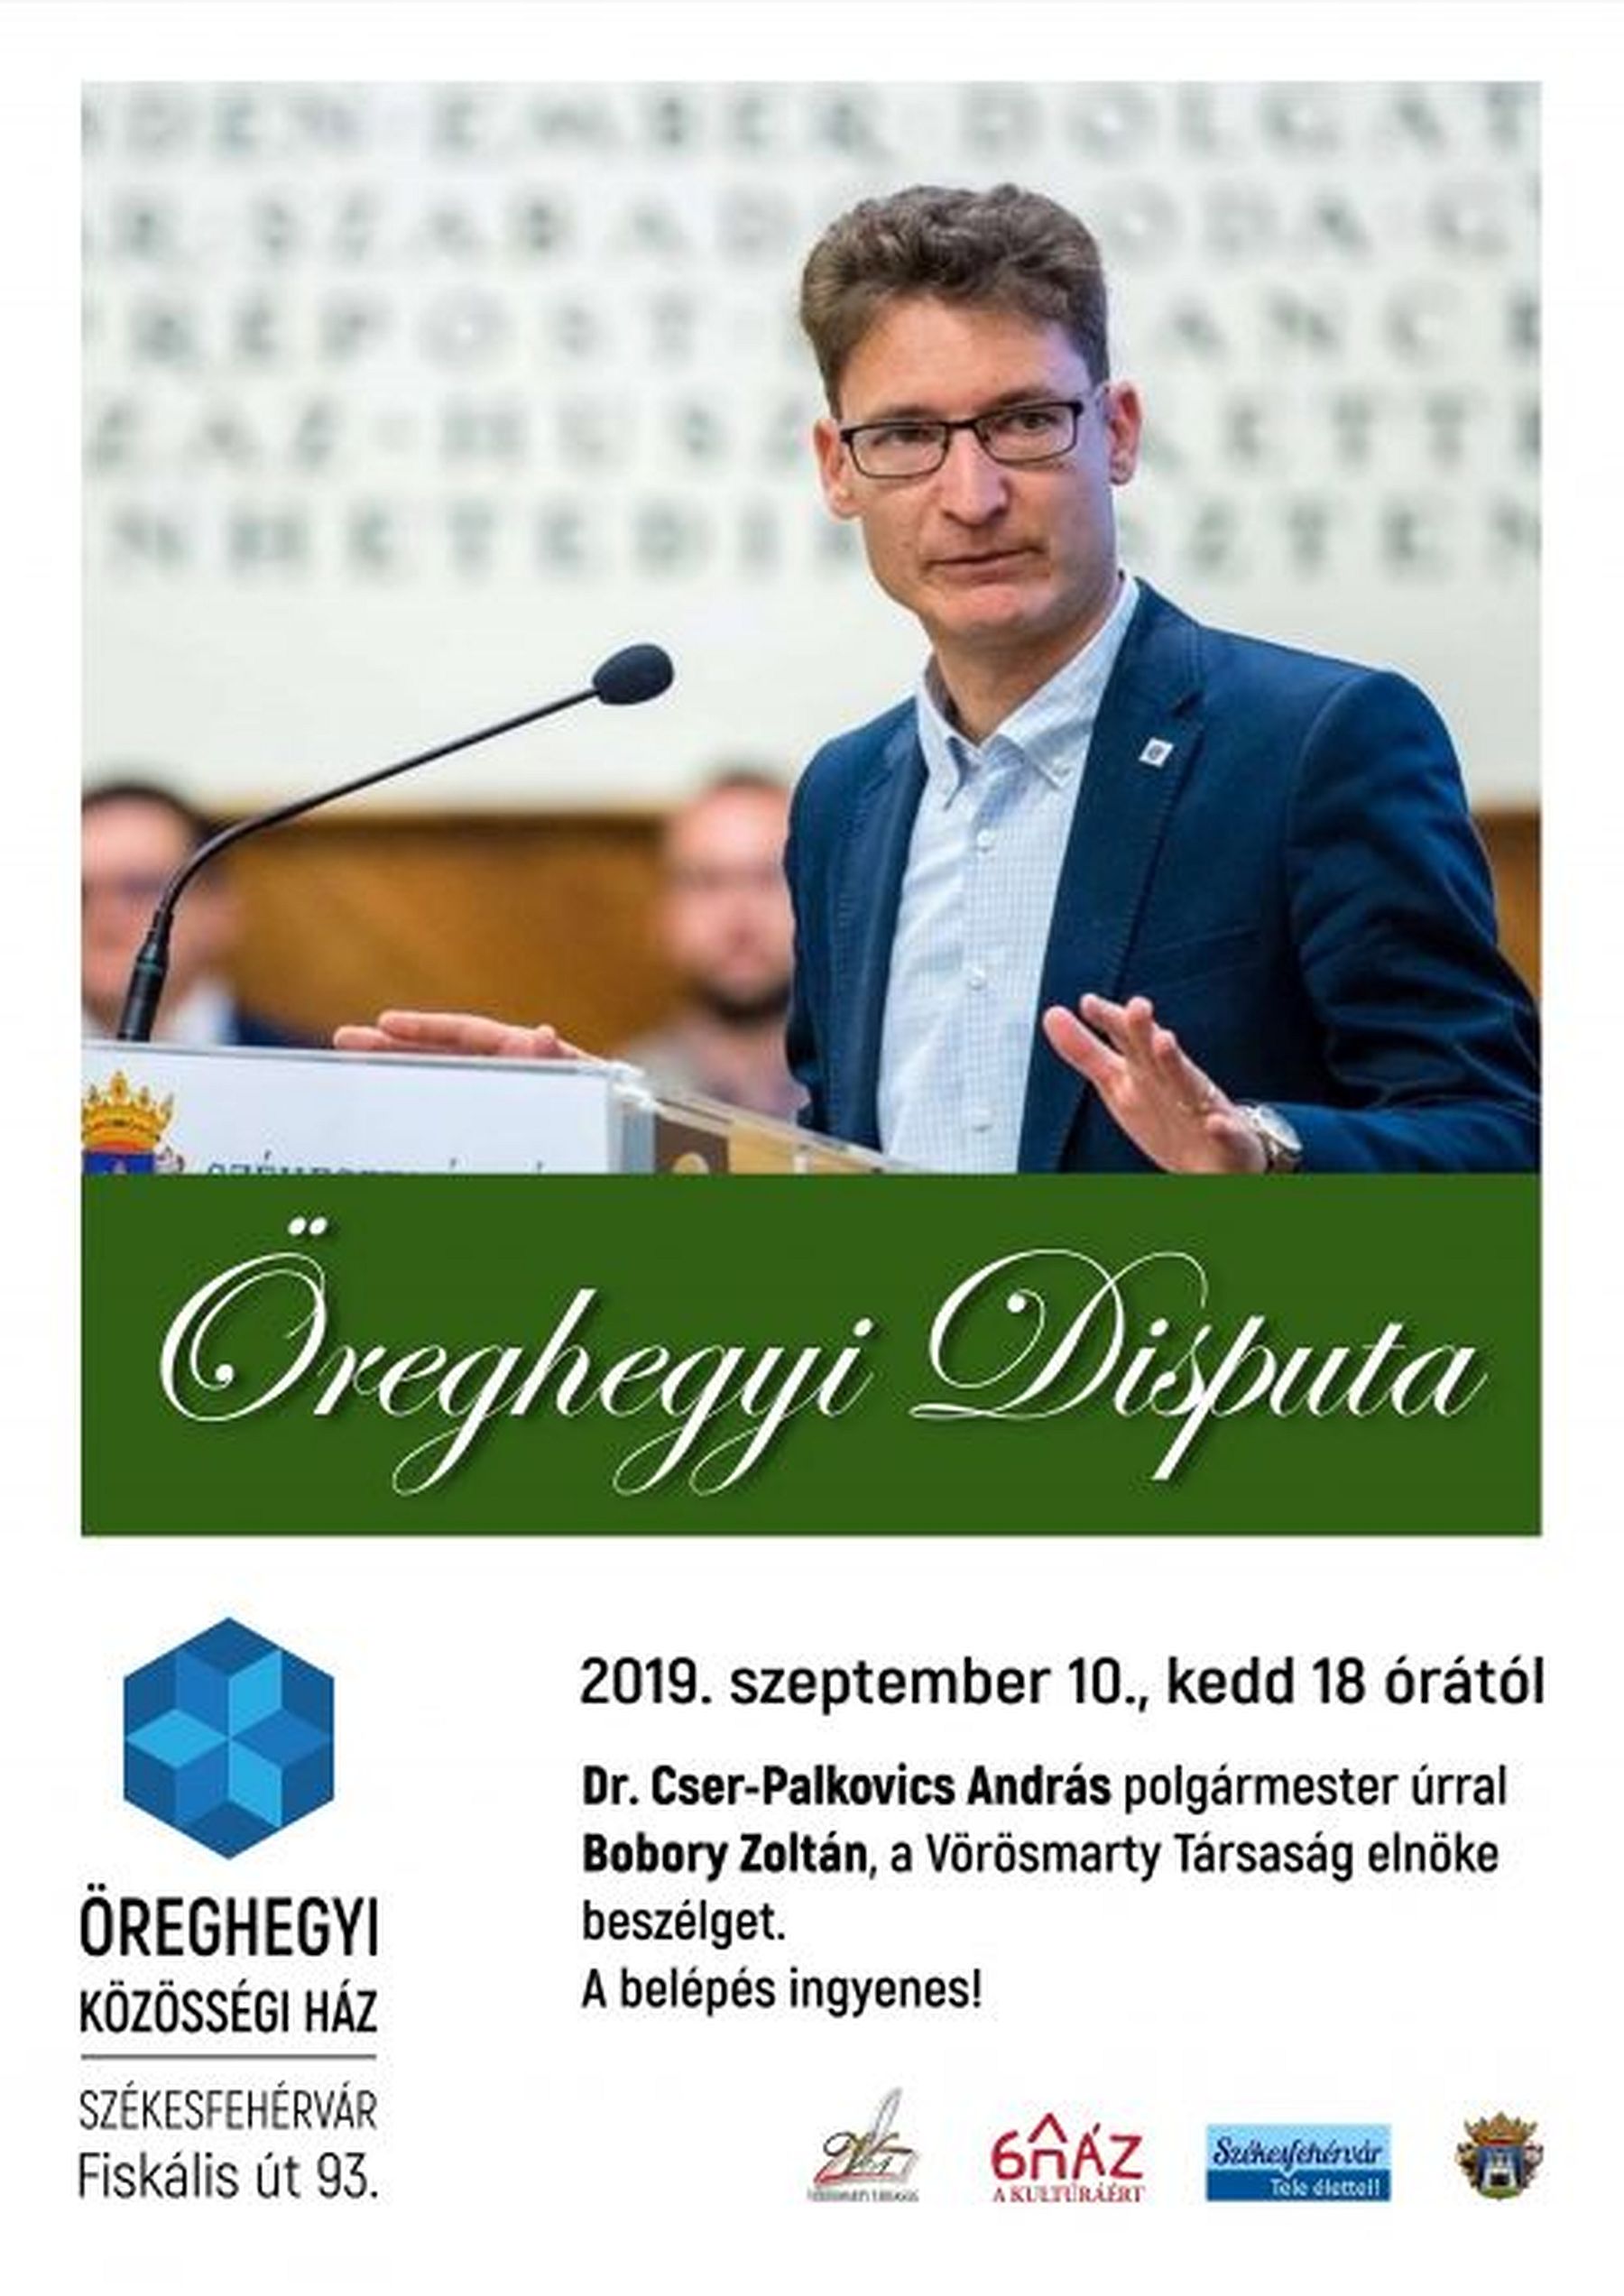 Dr. Cser-Palkovics András, polgármester lesz az Öreghegyi Disputa vendége kedden